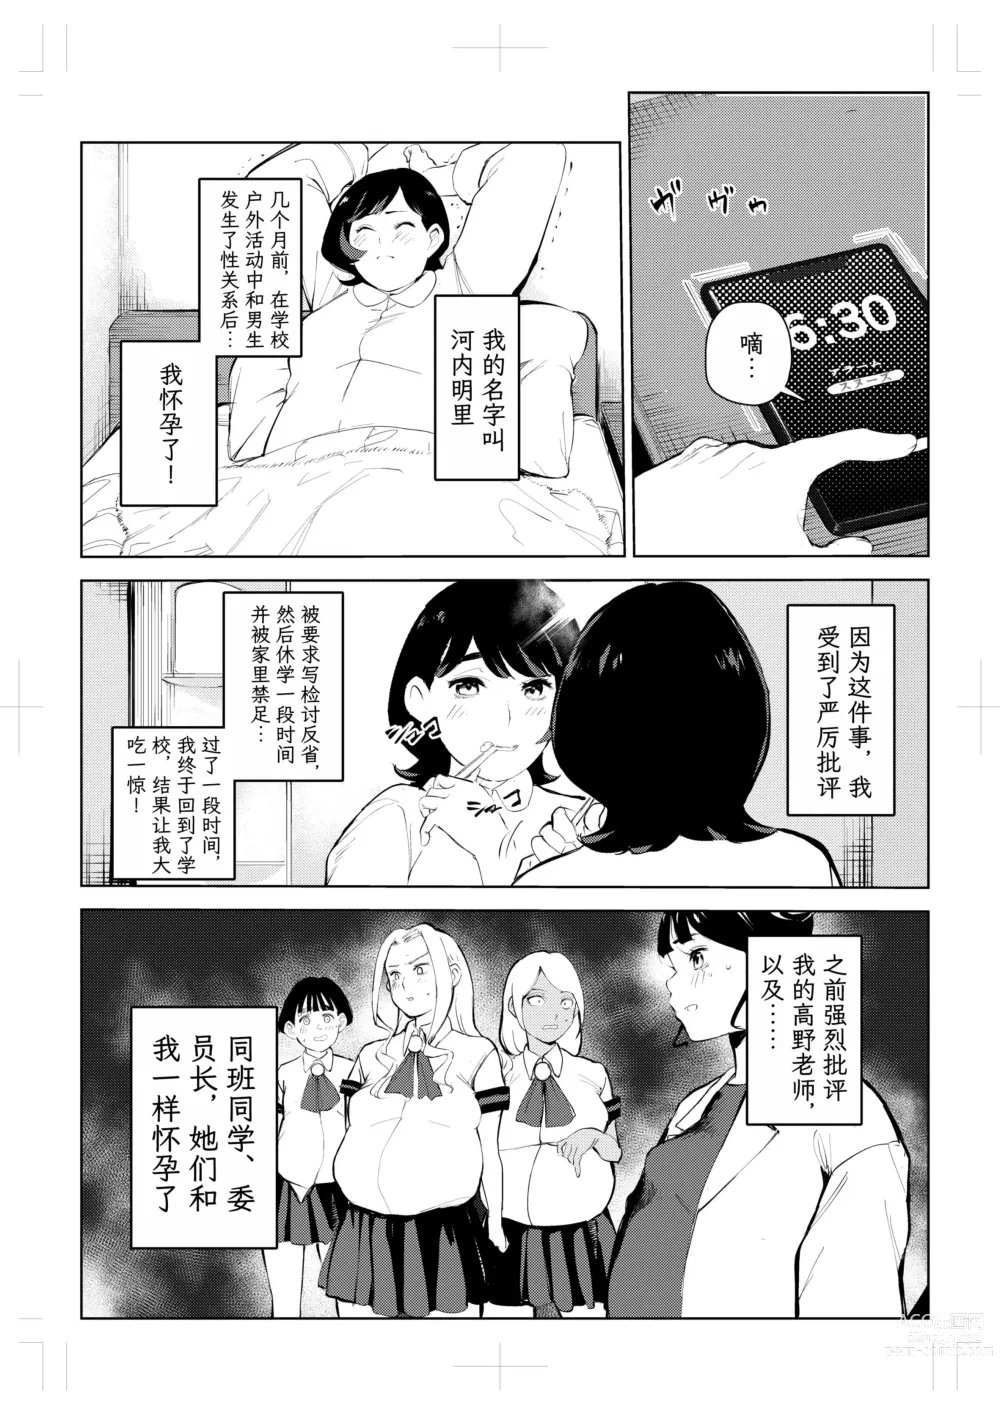 Page 81 of doujinshi 40-sai no Mahoutsukai 4